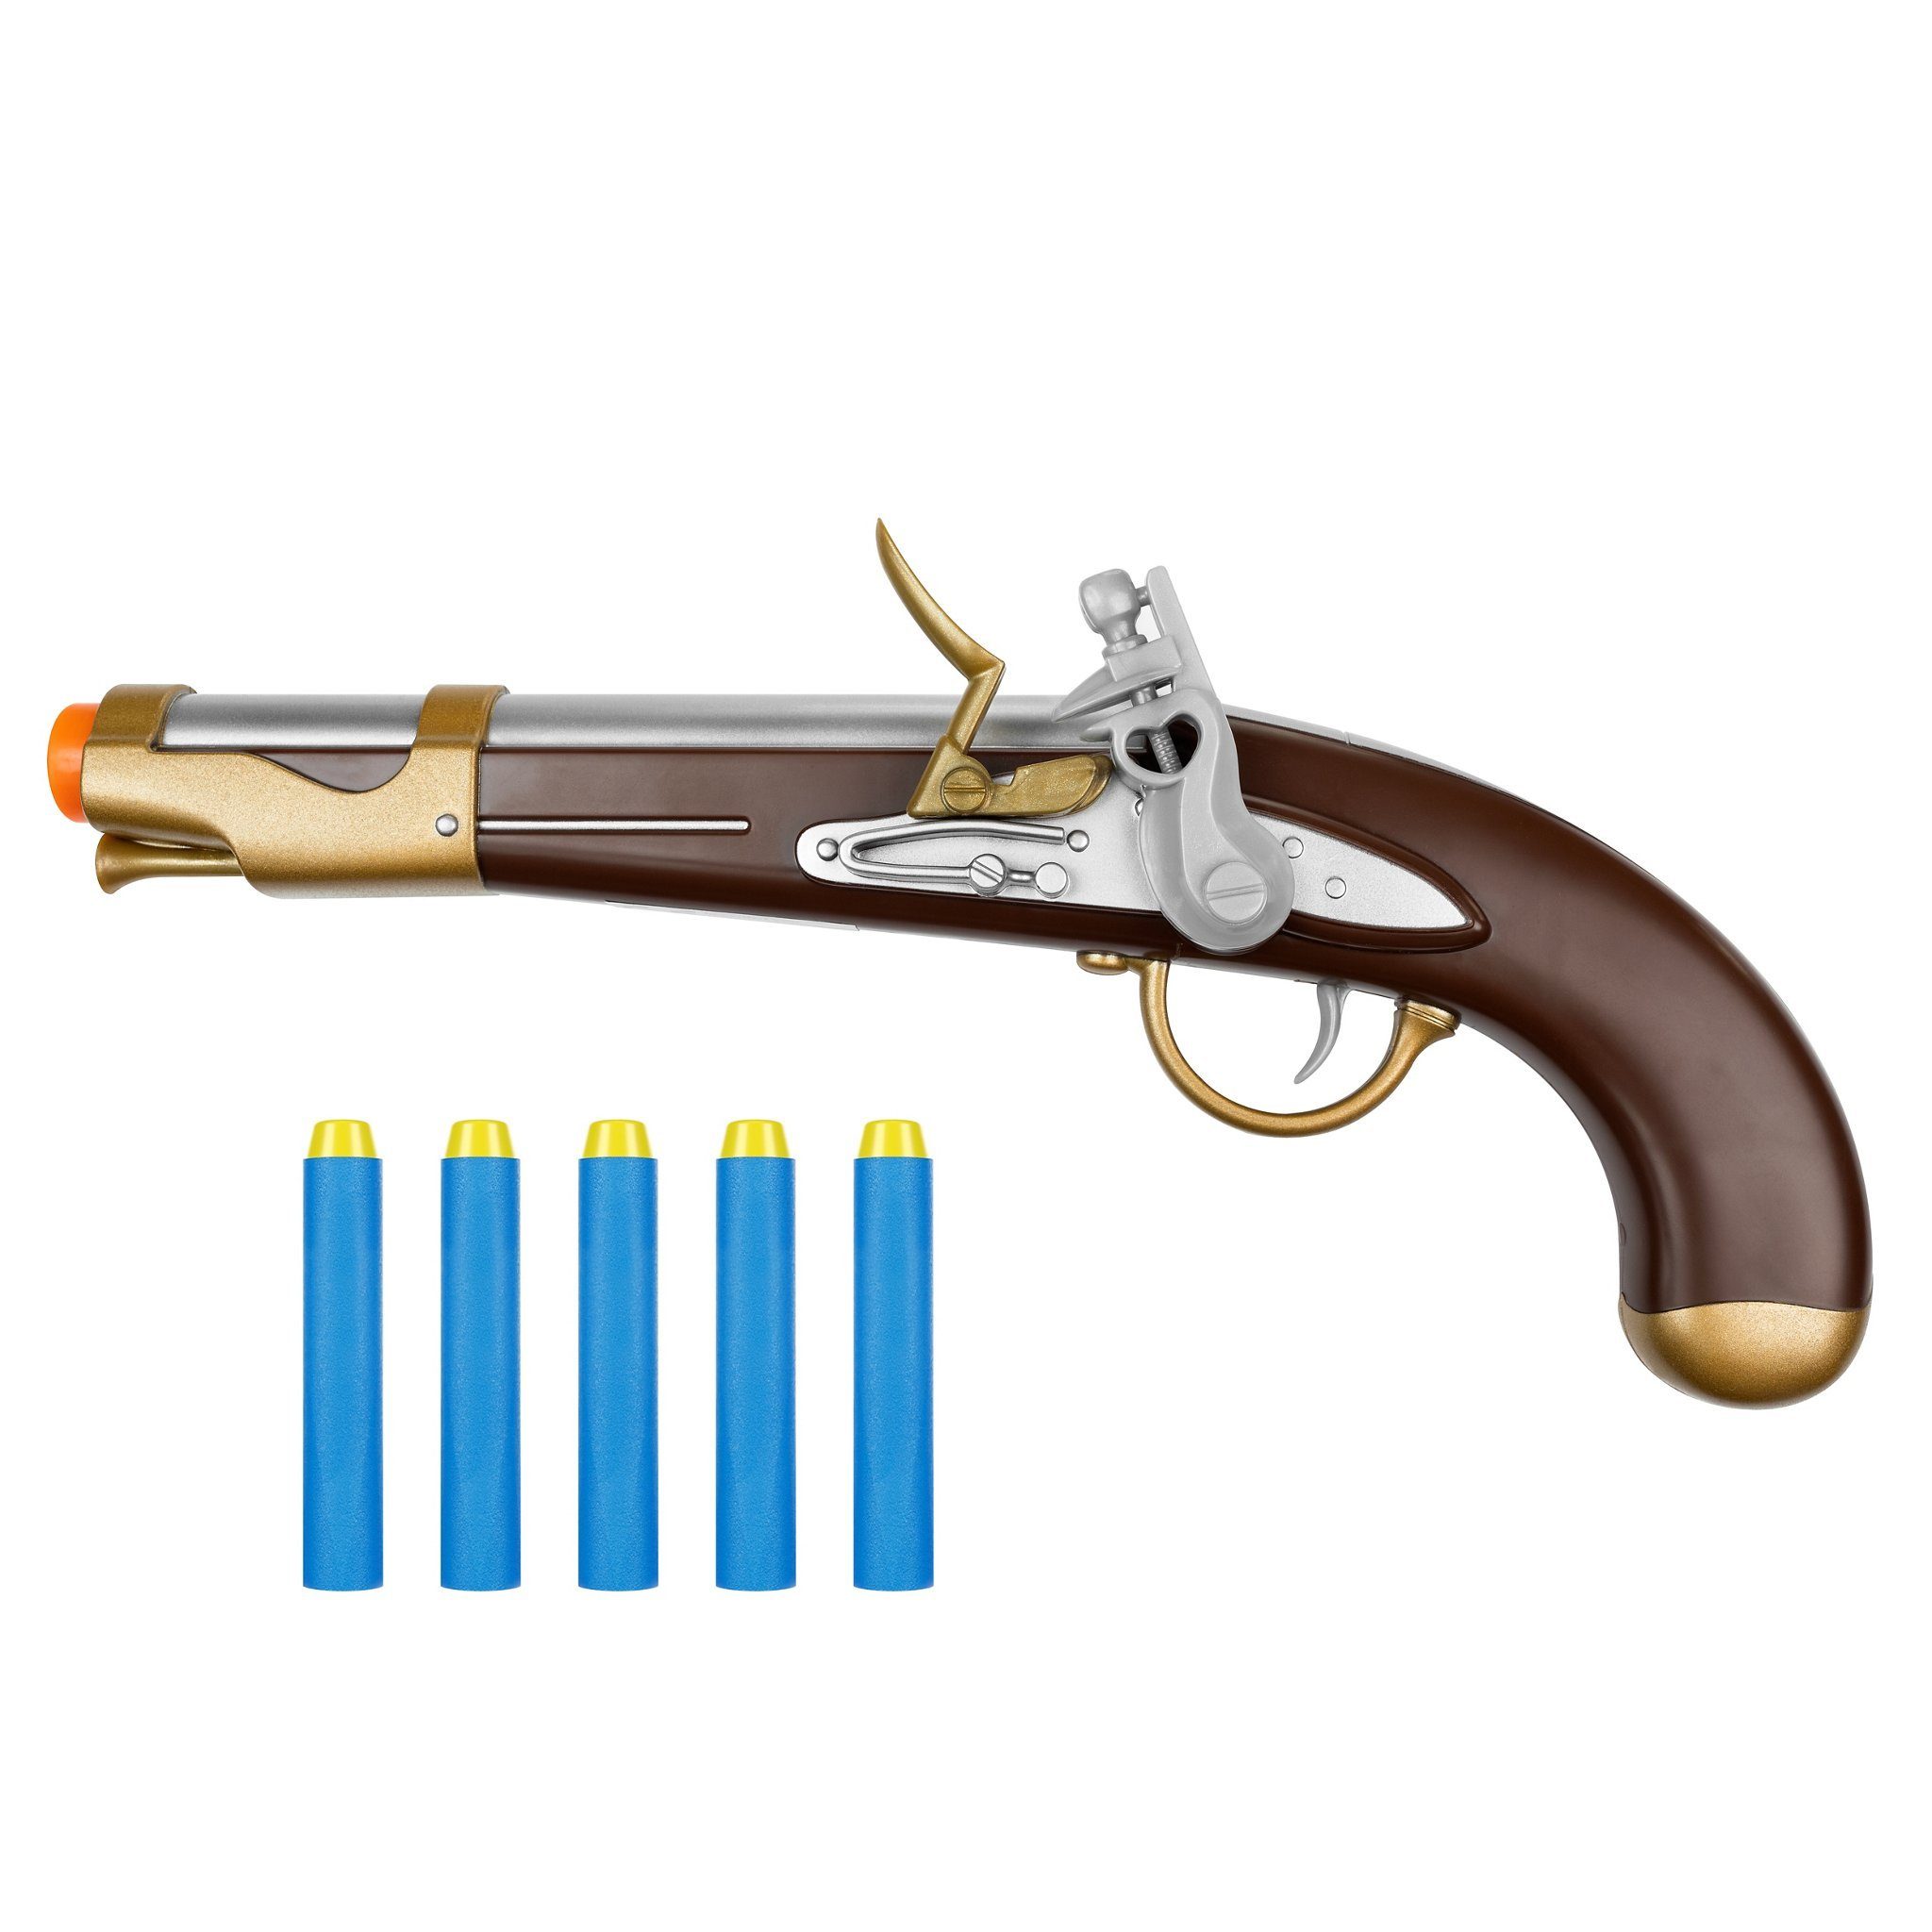 Buzz Bee Toys Blaster »Piratenpistole kompatibel mit NERF Darts«,  Spielzeugpistole mit Darts, die jedes Piratenkostüm perfekt macht. NERF  kompatibel. online kaufen | OTTO